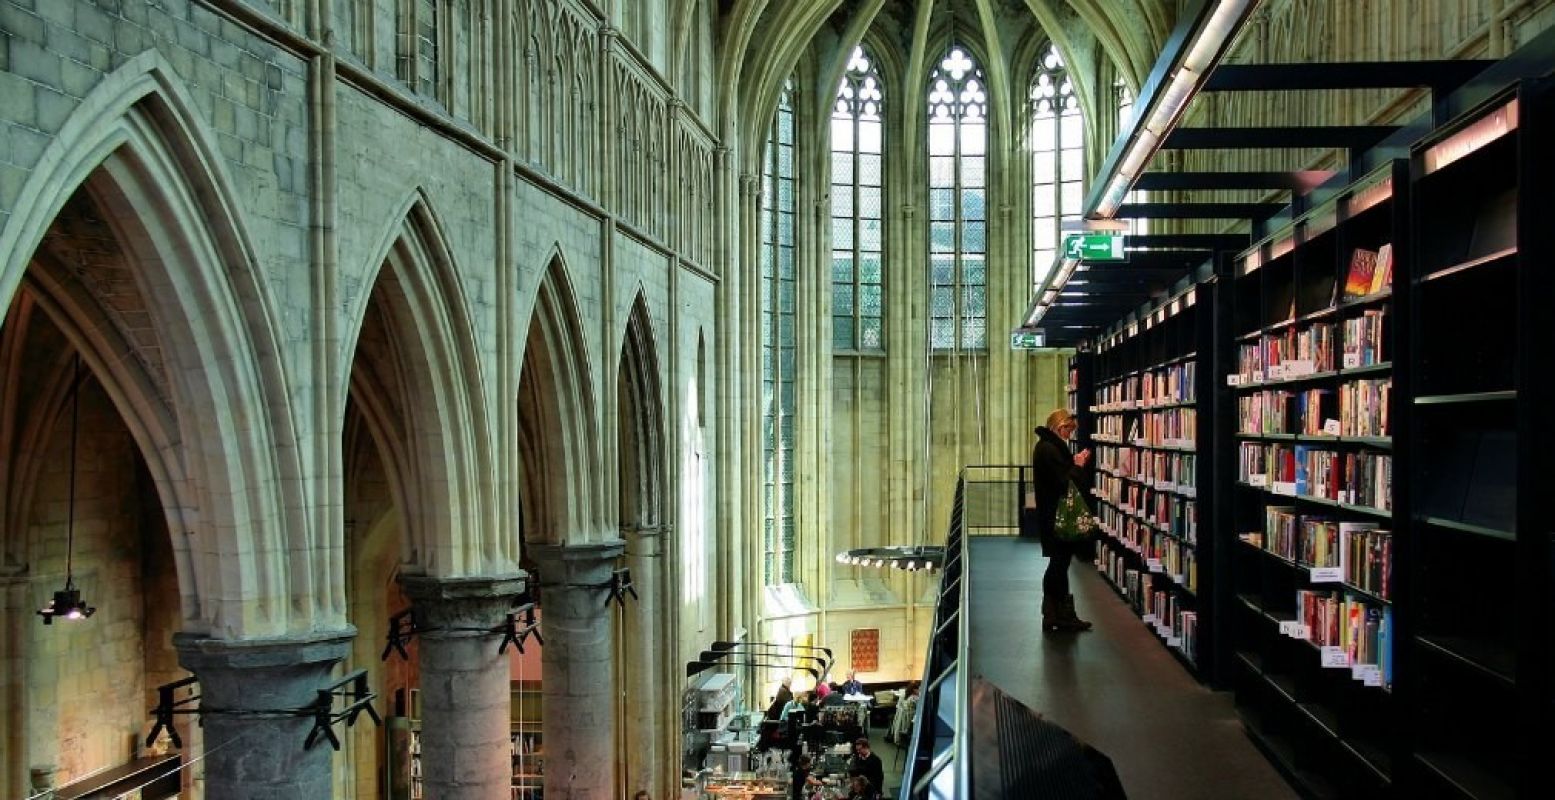 Boekhandel Dominicanen, Maastricht. Fotograaf:  Jorge Franganillo . Licentie:  Sommige rechten voorbehouden . Bron:  Flickr.com 